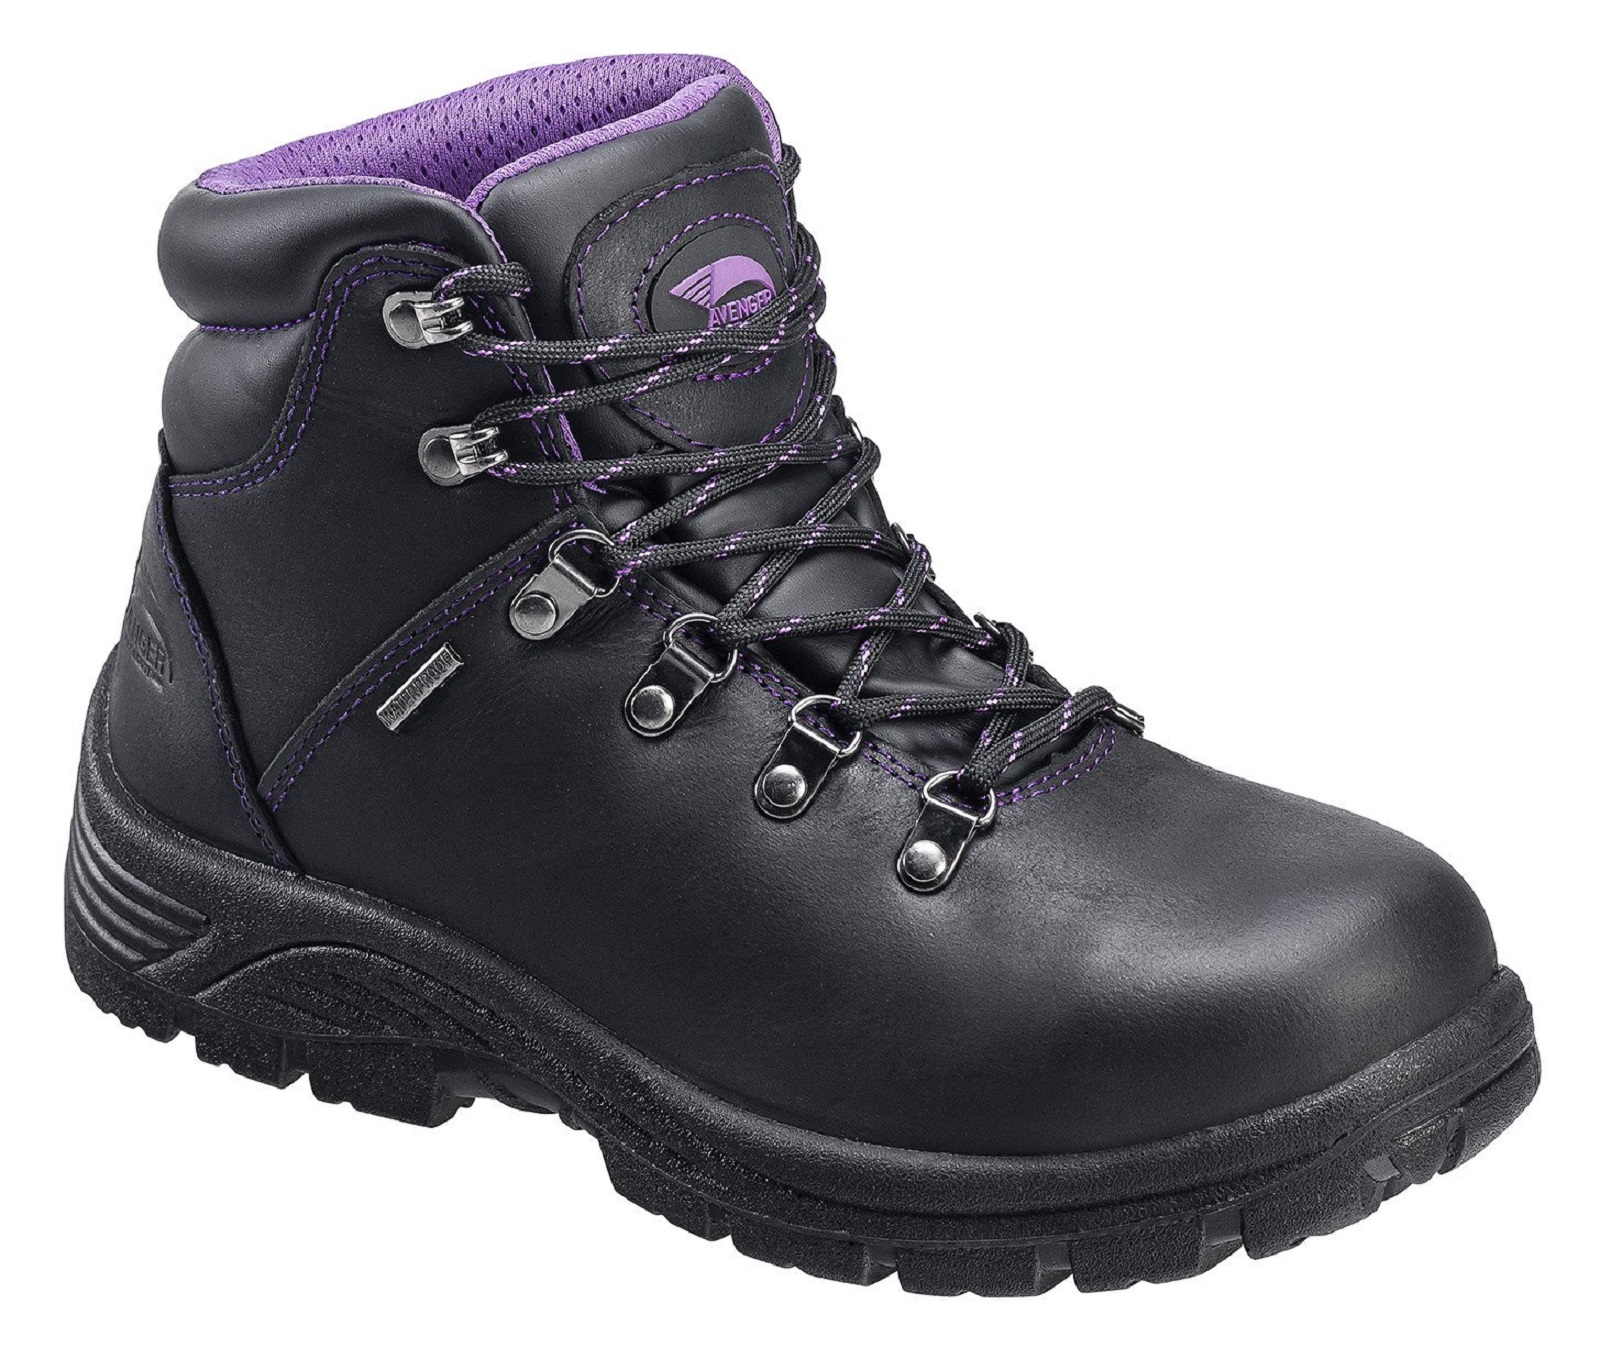 Avenger Safety Footwear Women's A7124 Black Waterproof Steel Toe Work Boot